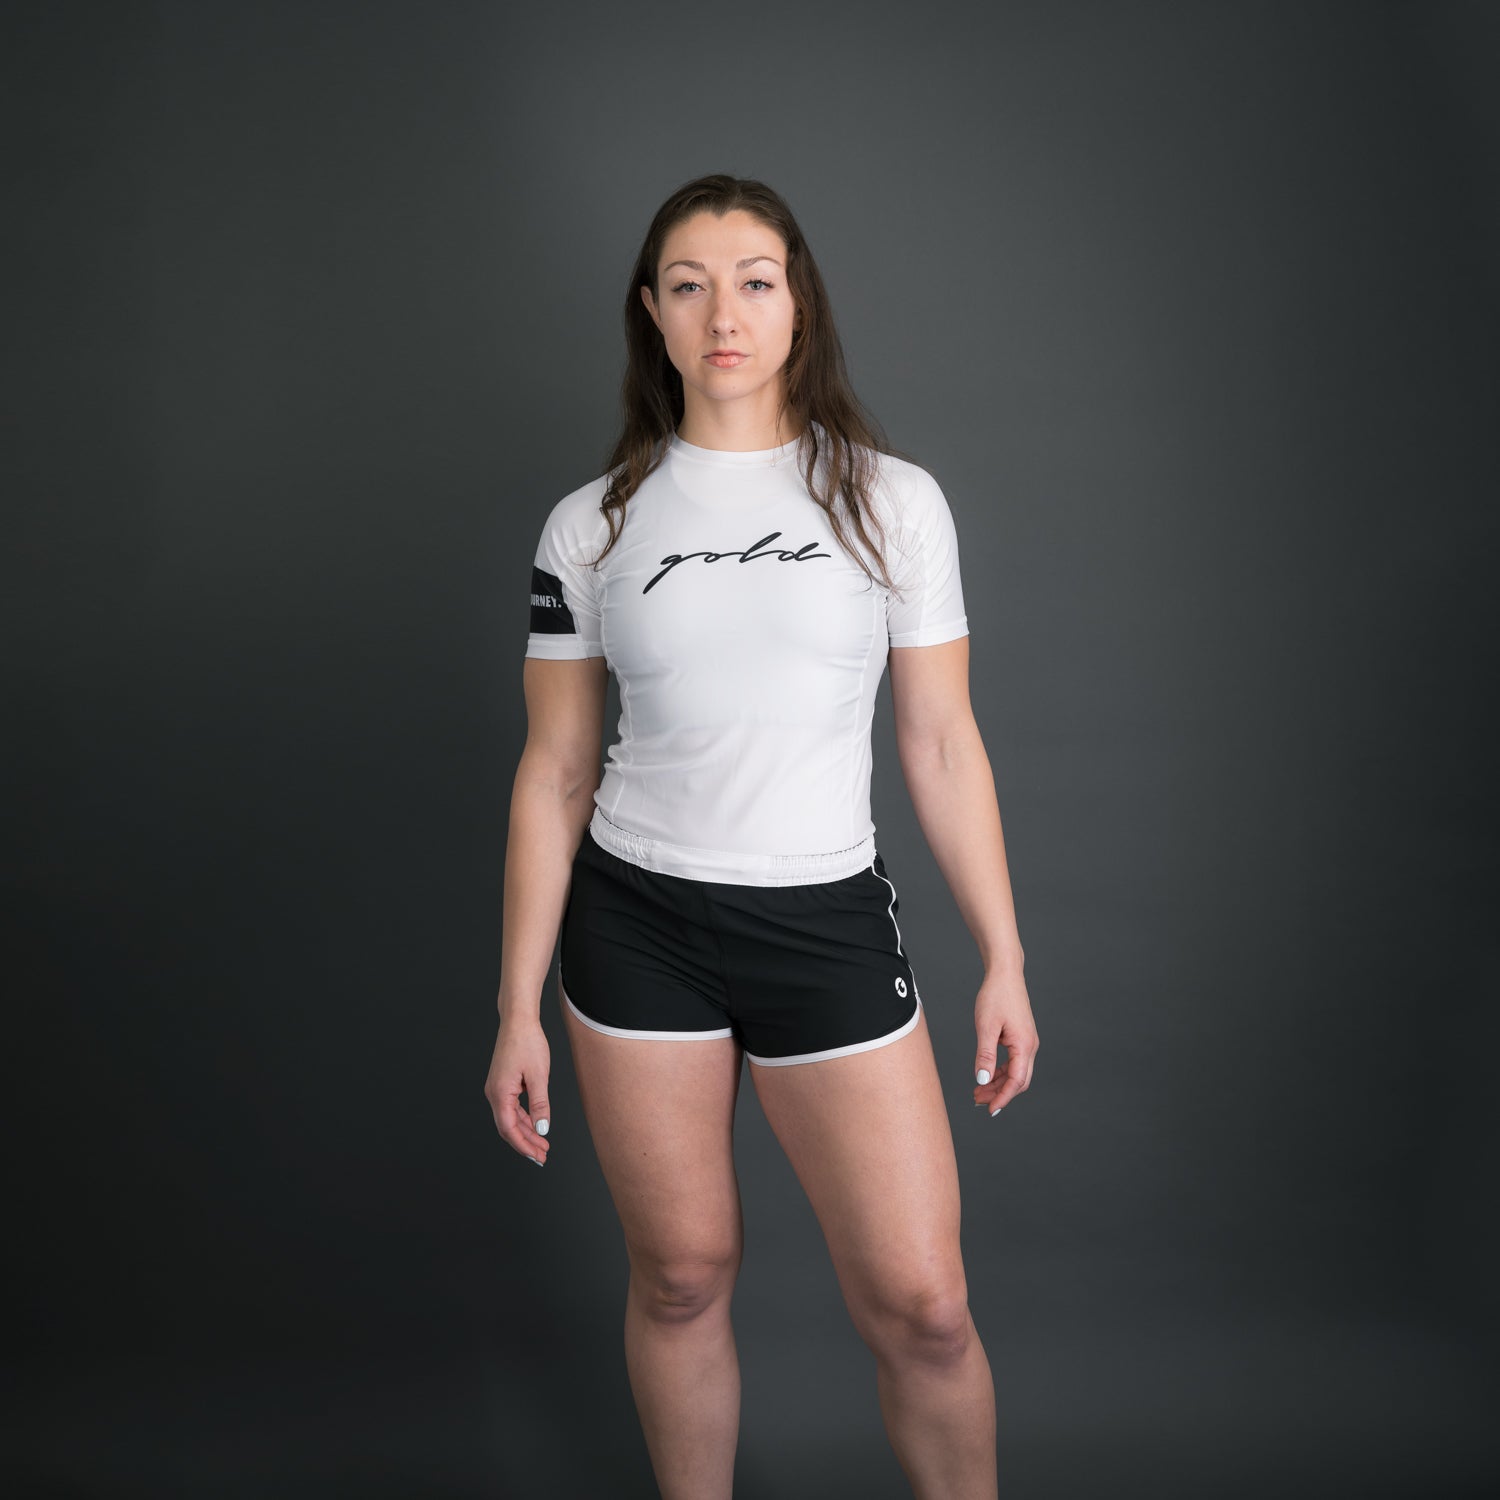 Women's Pacific Shorts: No-Gi Jiu Jitsu Fight Shorts